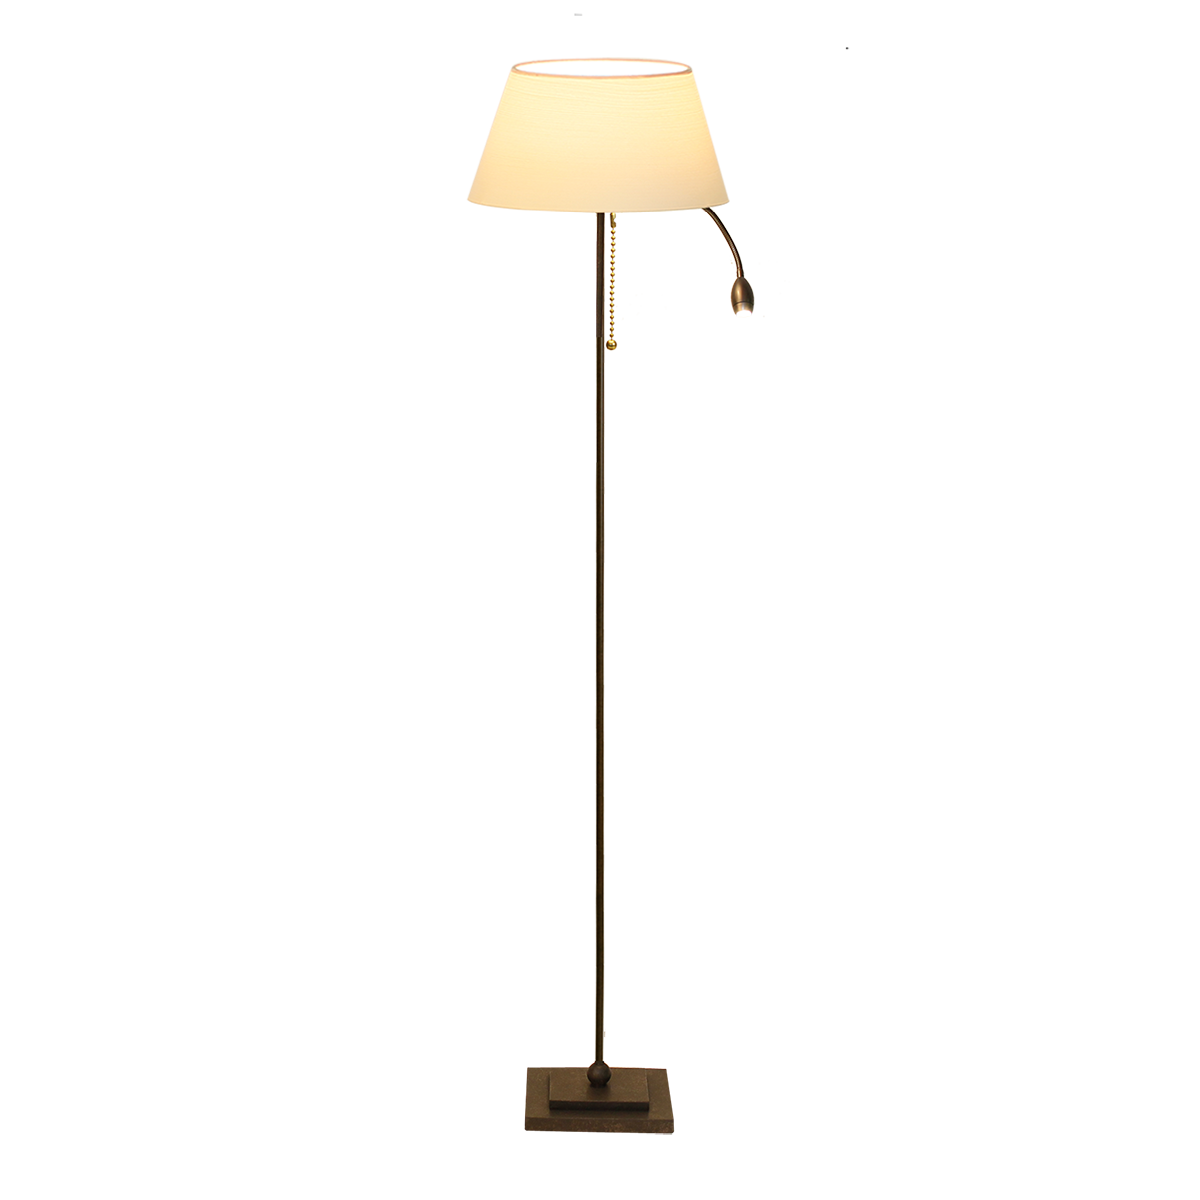 Living Standleuchte Eisen braun schwarz E27 mit LED Lesearm Flexarm mit Lampenschirm Chintz Farbe nach Wahl